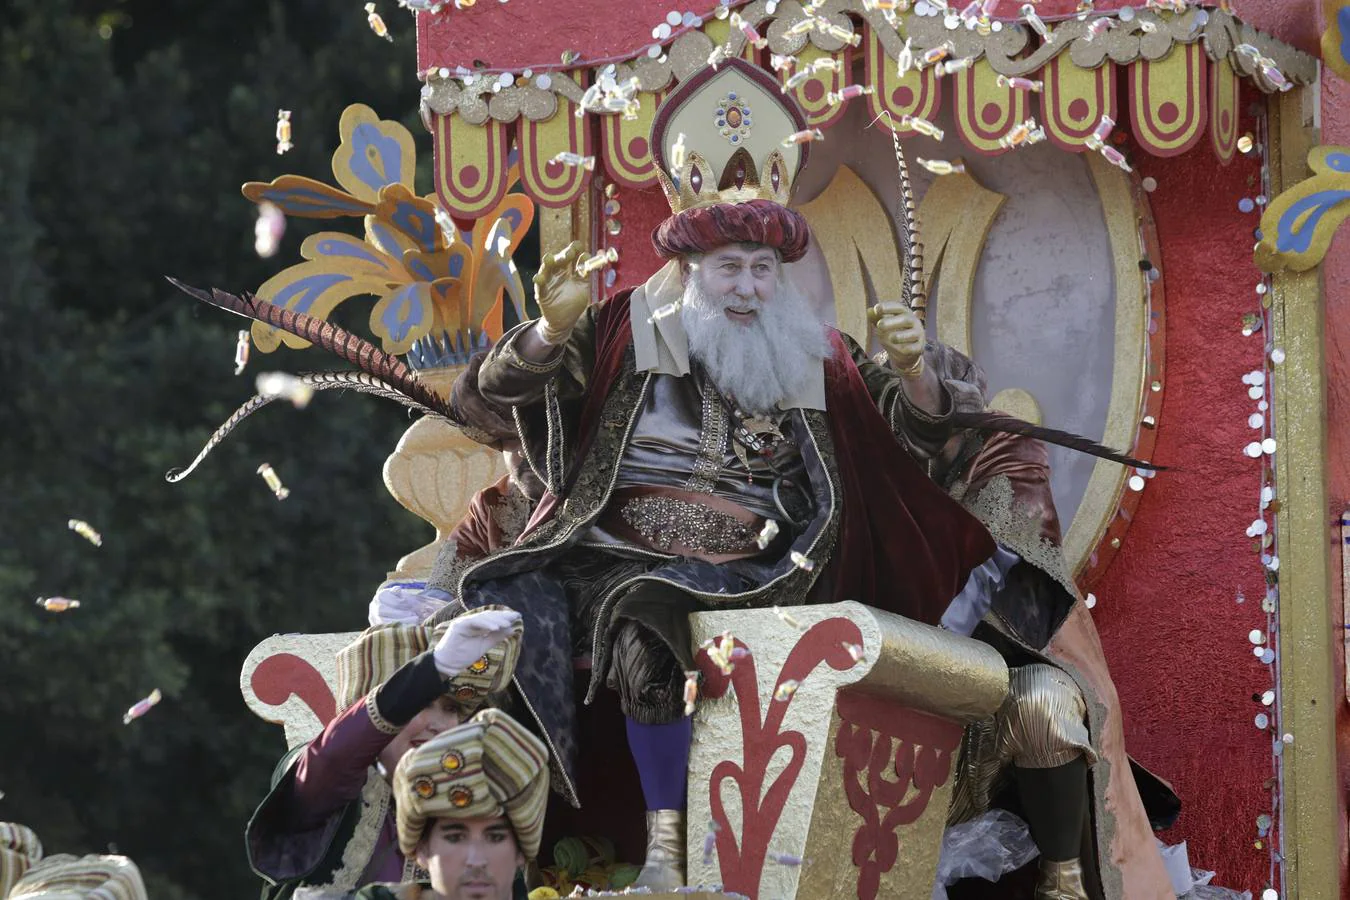 Crónica gráfica: los detalles de la Cabalgata de Reyes Magos de Sevilla 2019